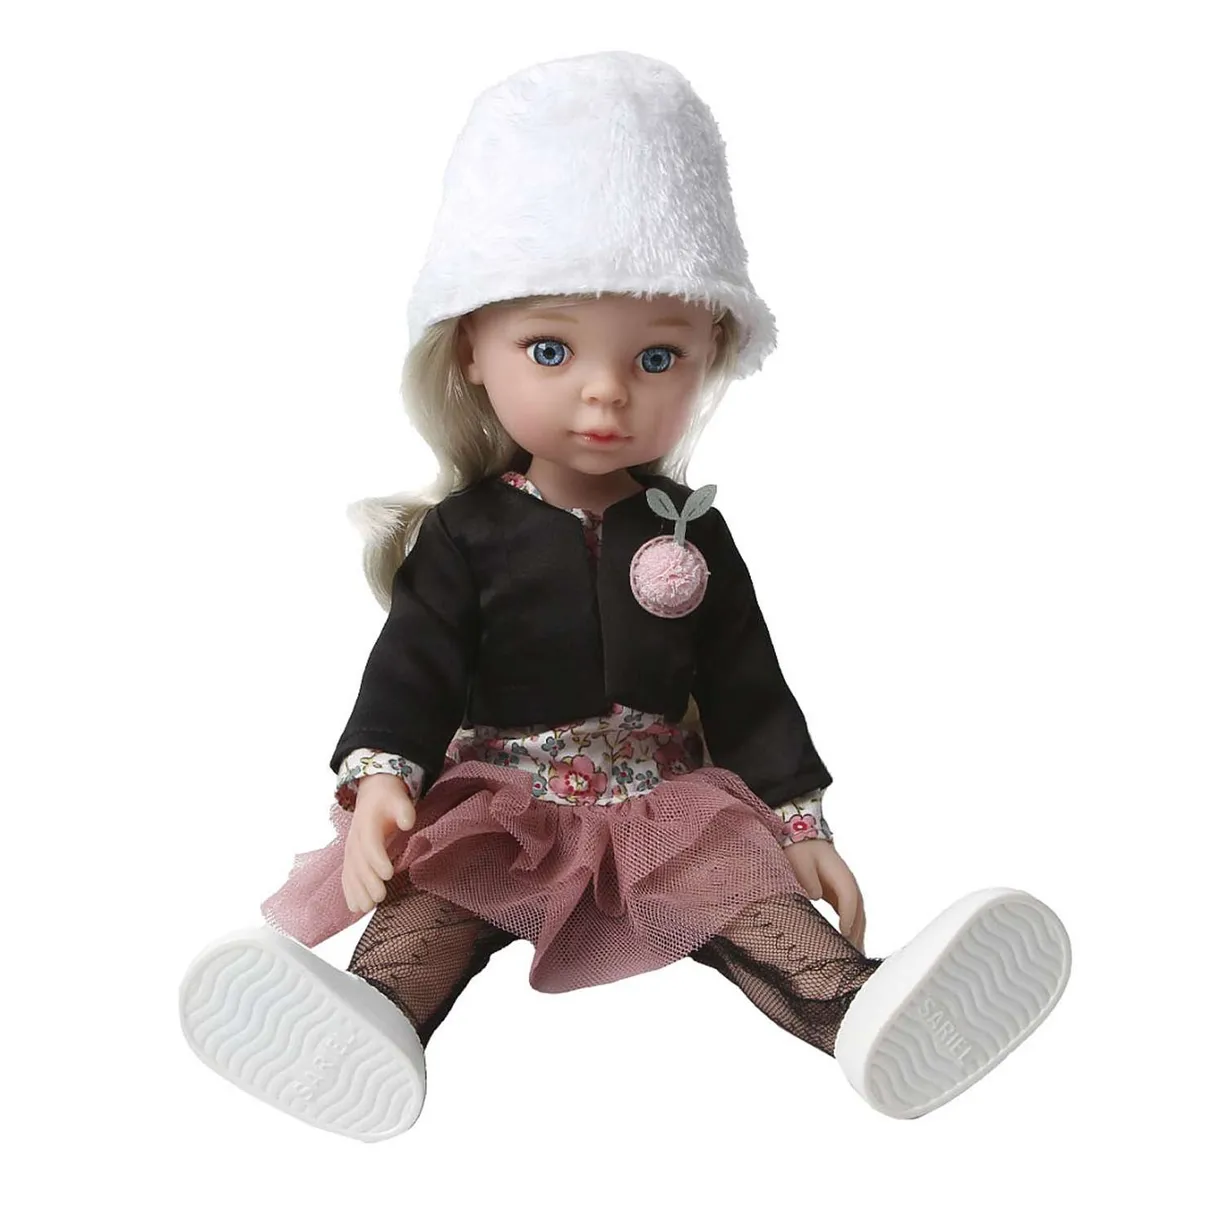 Модная кукла Пенни - фото